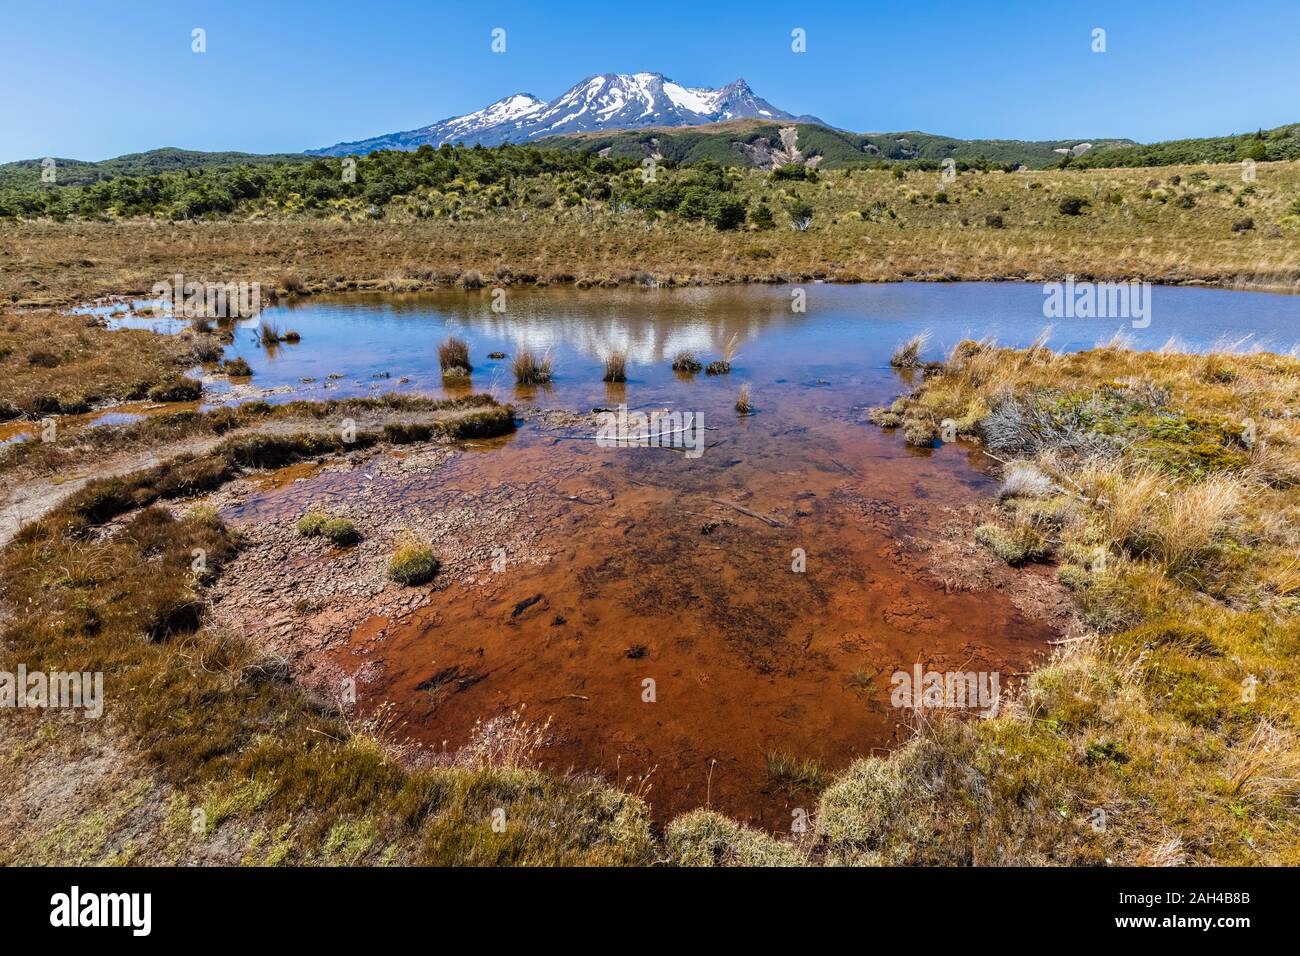 Nueva Zelanda, el norte de la isla, pequeño lago, en el norte de la isla con el Monte Ruapehu meseta volcánica inminente en la distancia Foto de stock